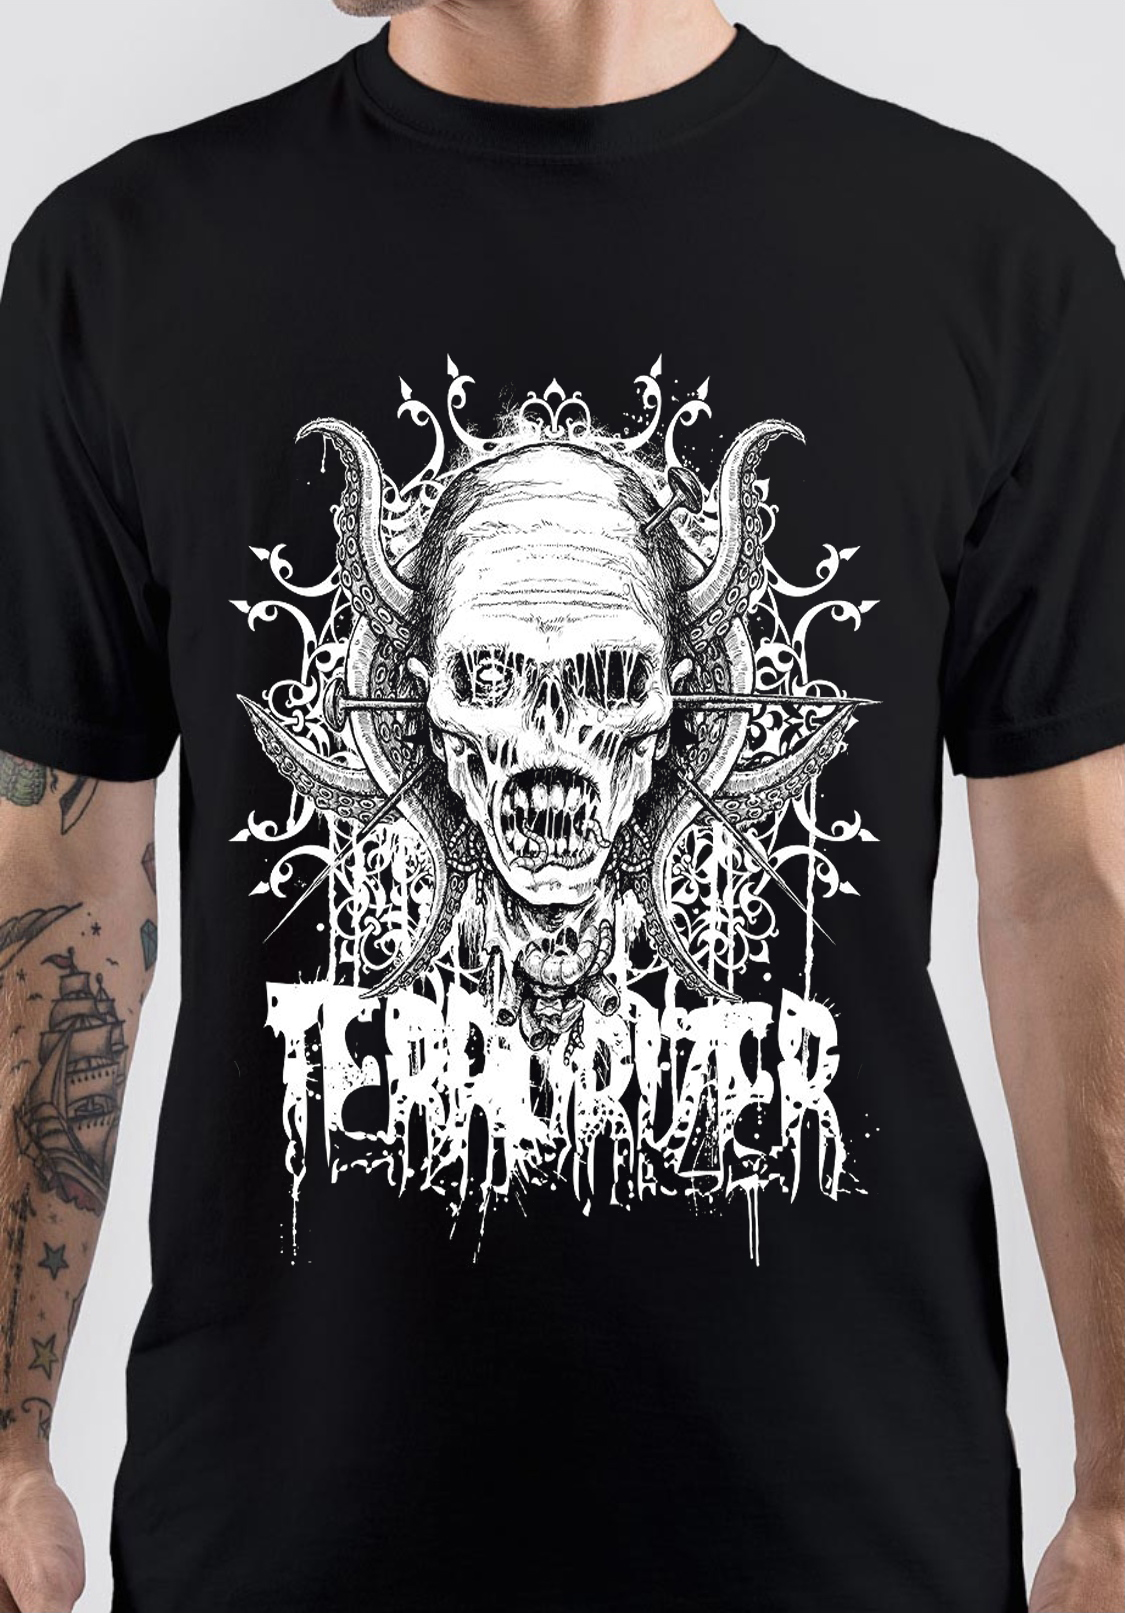 Terrorizer T-Shirt And Merchandise